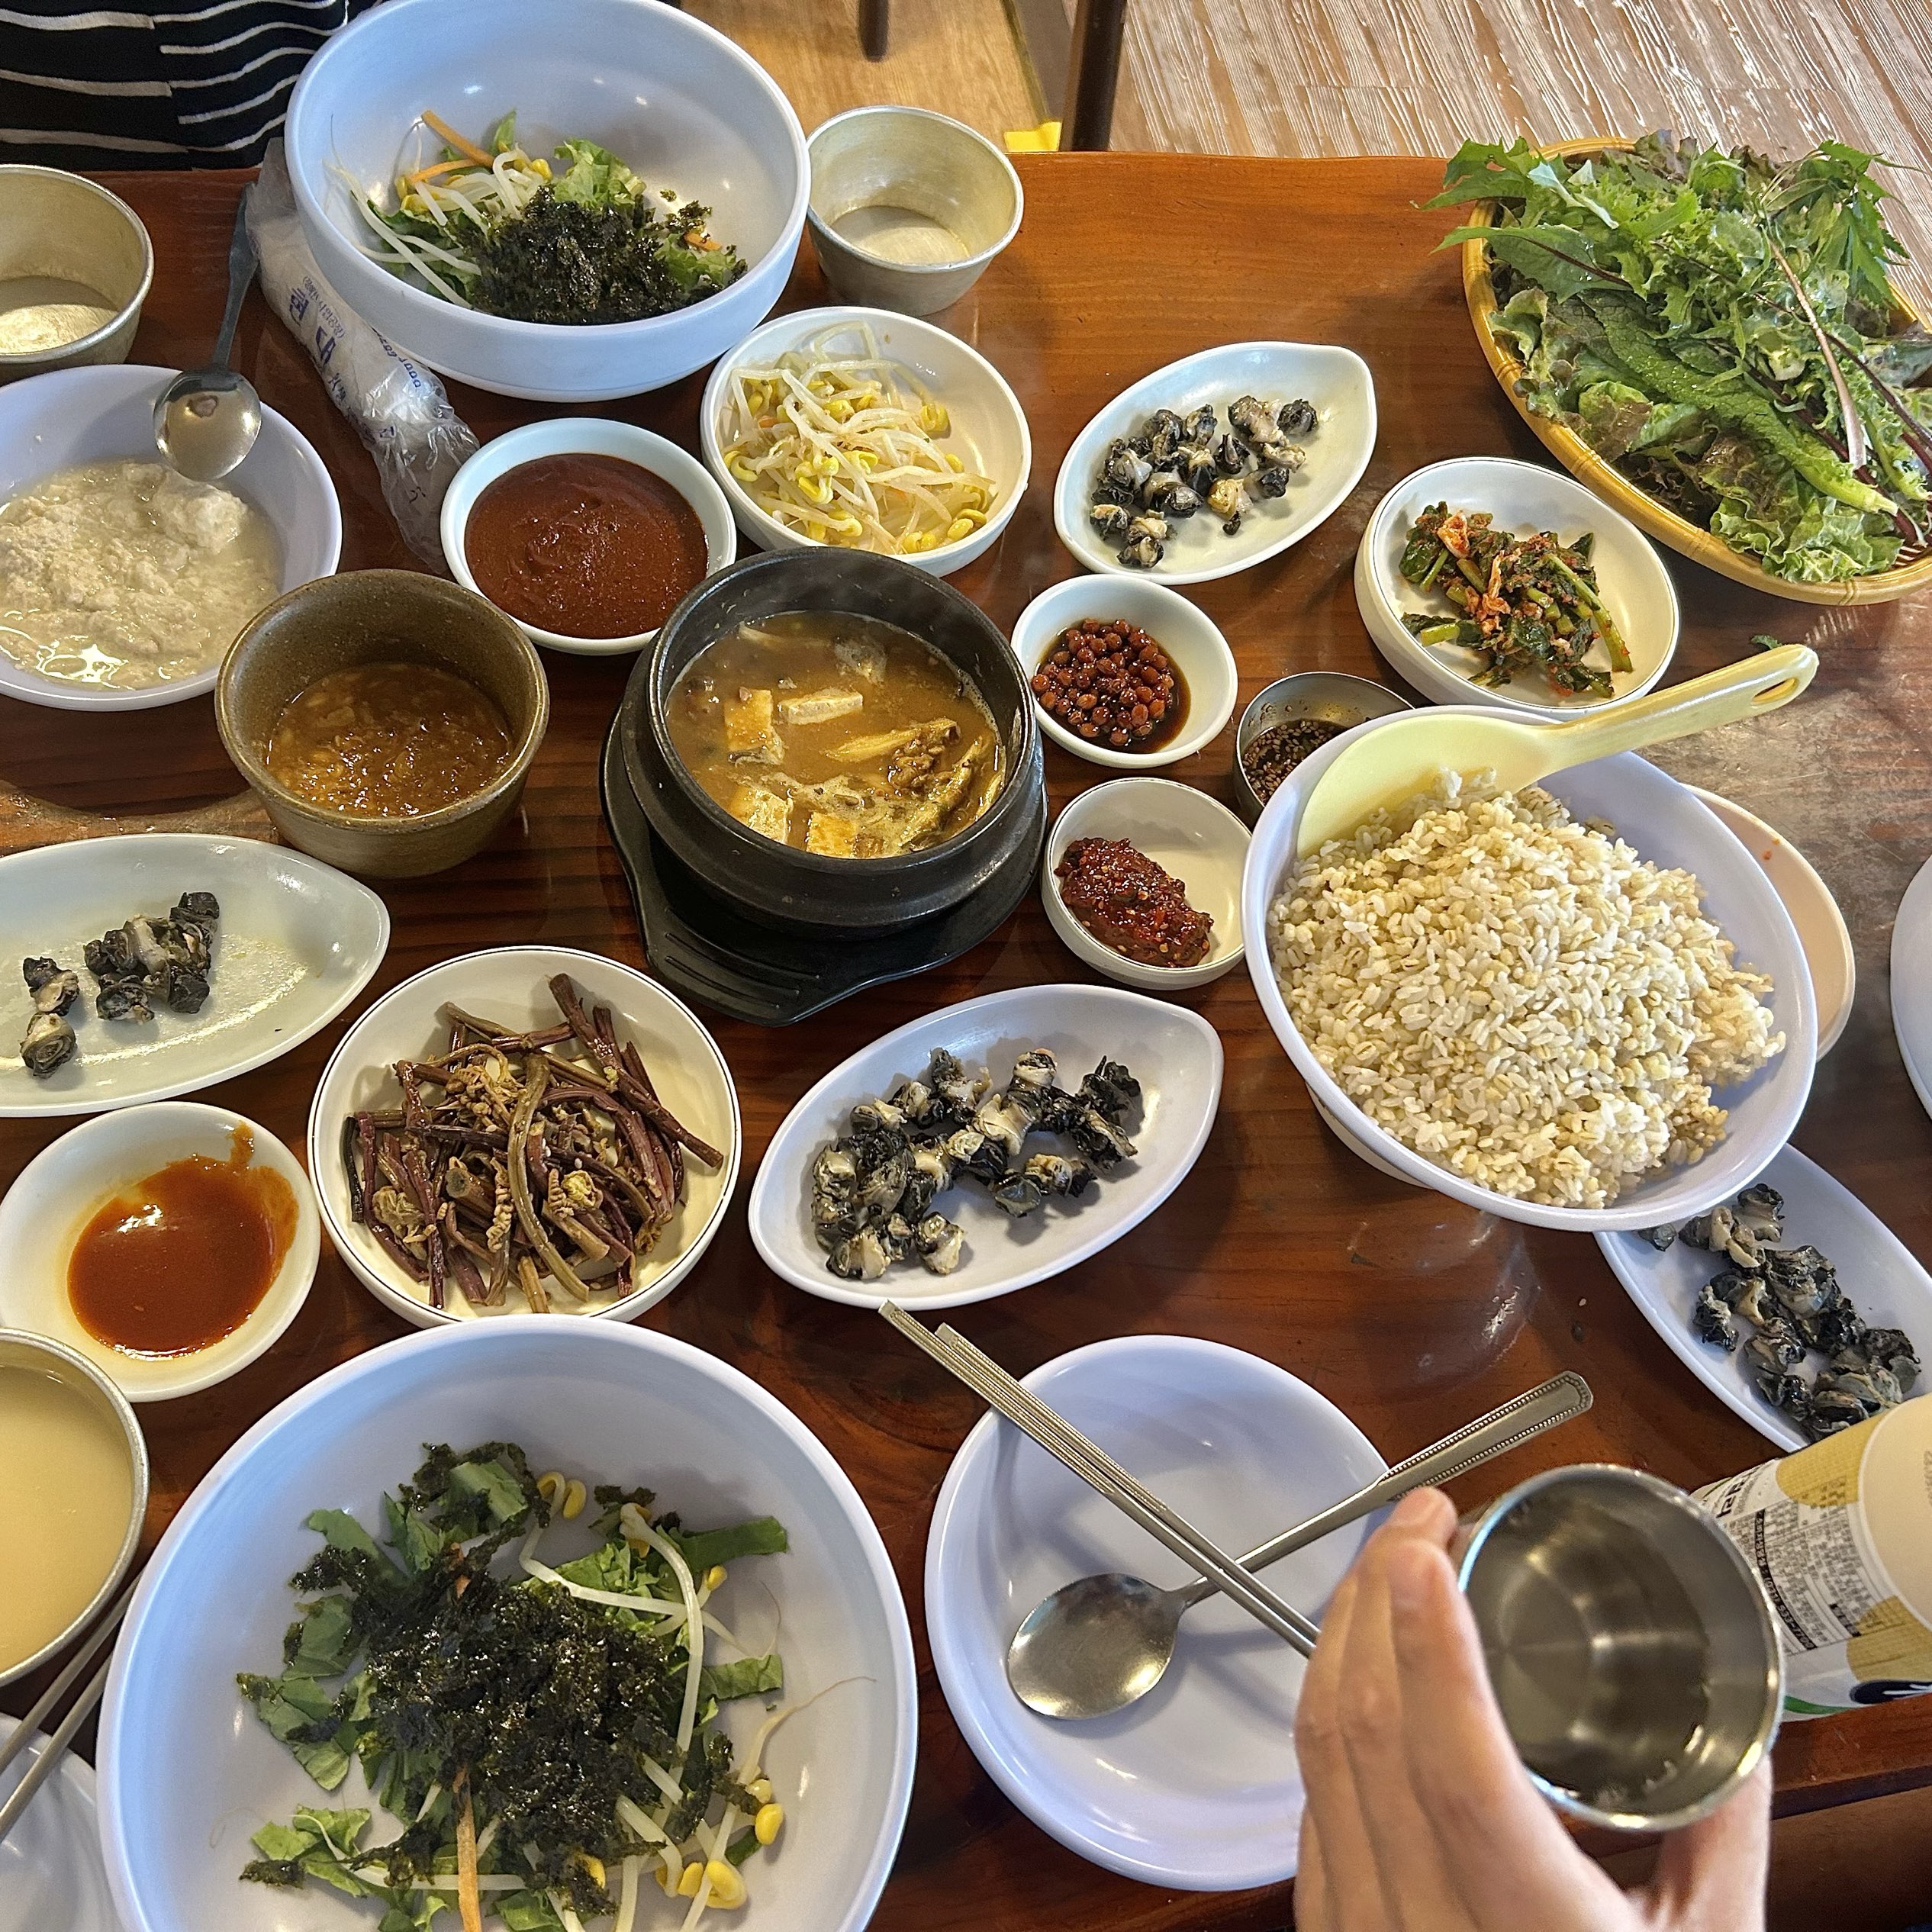 浦川原创乌龙包饭豆腐,因丰盛的饭菜而闻名,充满乡村人情味。